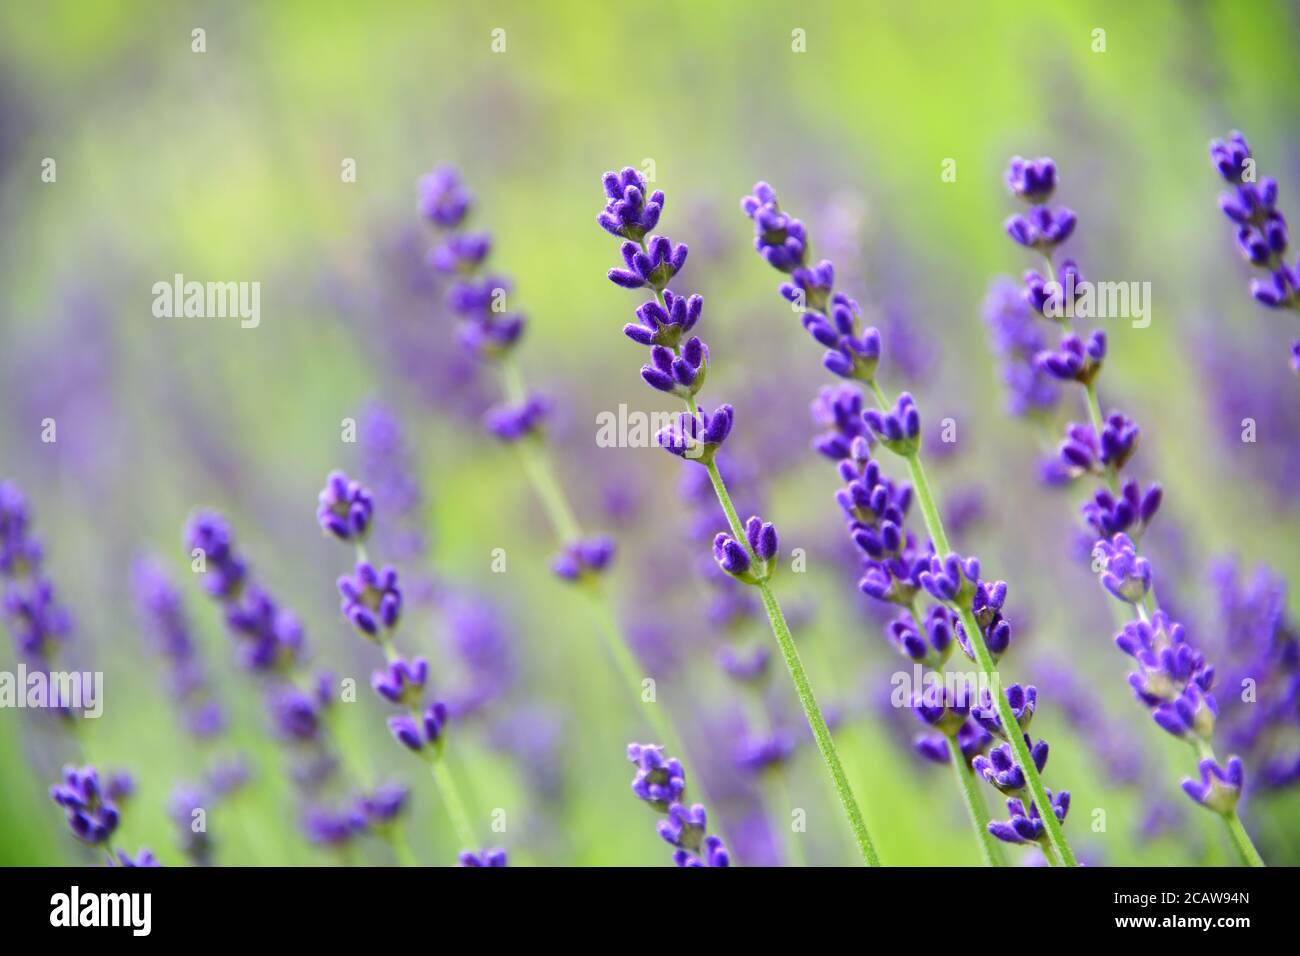 Lavendelblüte (Lavandula angustifolia, Hidcote) in Nahaufnahme, Makrofotografie mit selektivem Fokus und weichem Bokeh Hintergrund. Stockfoto